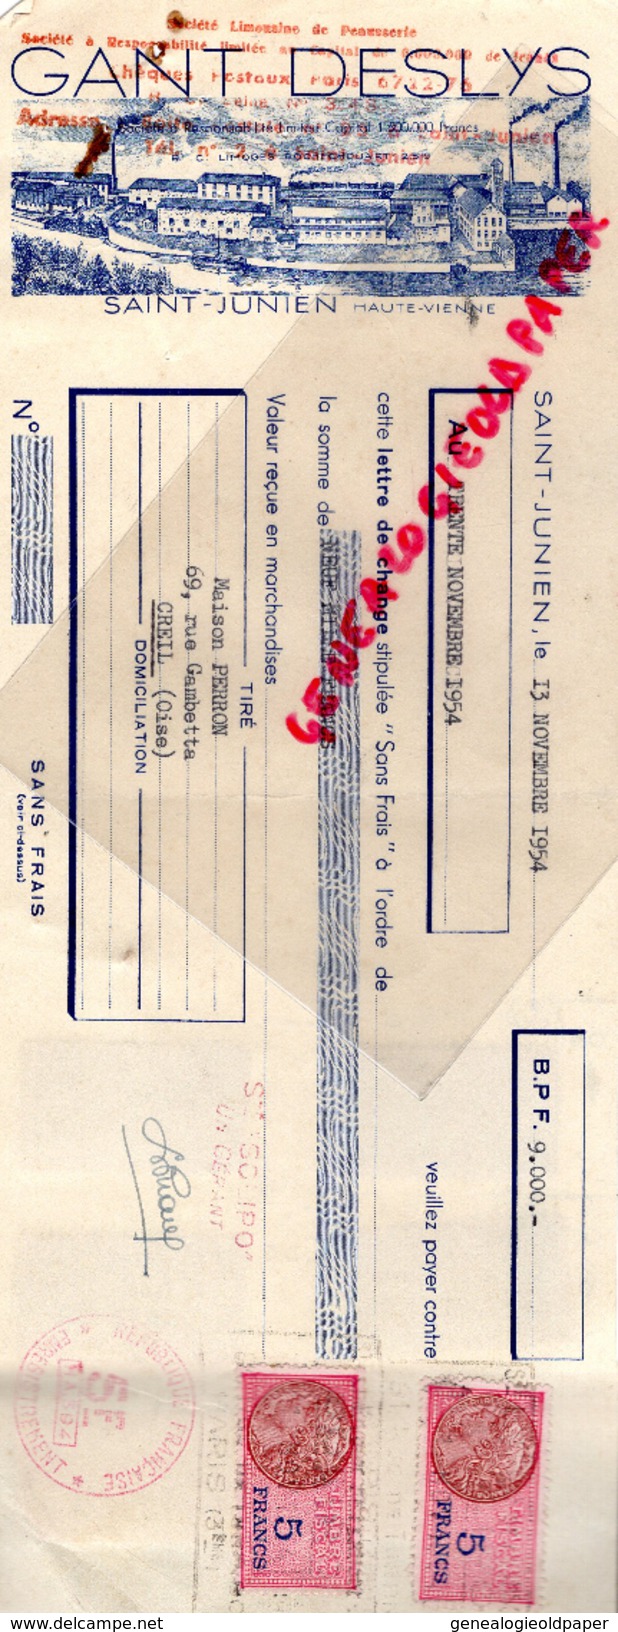 87 - ST SAINT JUNIEN - TRAITE GANTERIE GANT DESLYS- MAISON PERRON CREIL- GANTS- MEGISSERIE- 1954 MEGISSERIE - Electricité & Gaz